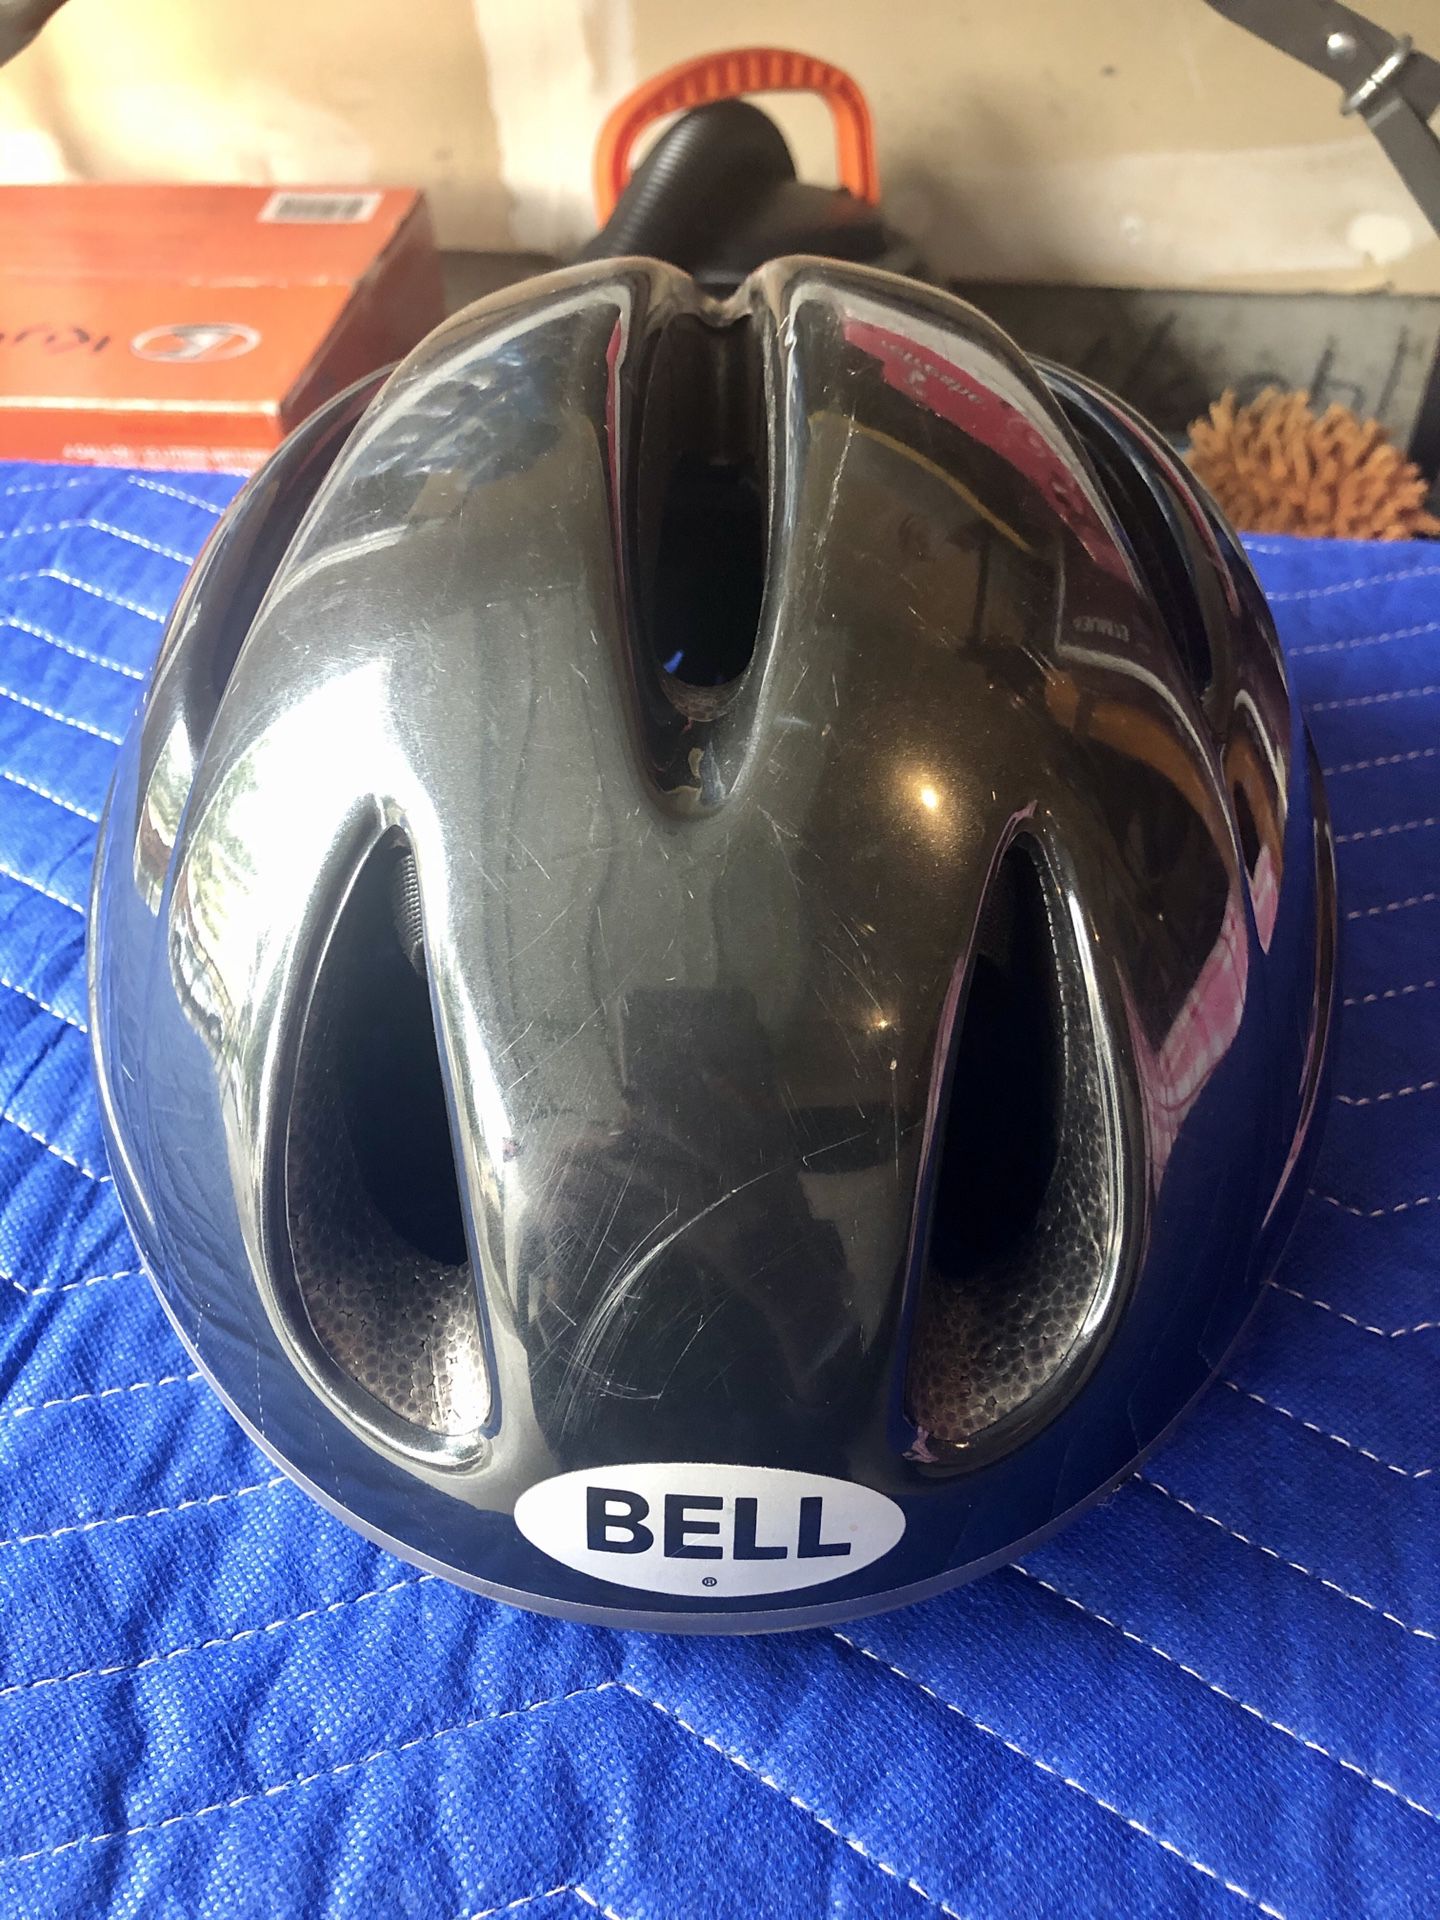 Bell Bicycle Helmet - FREE